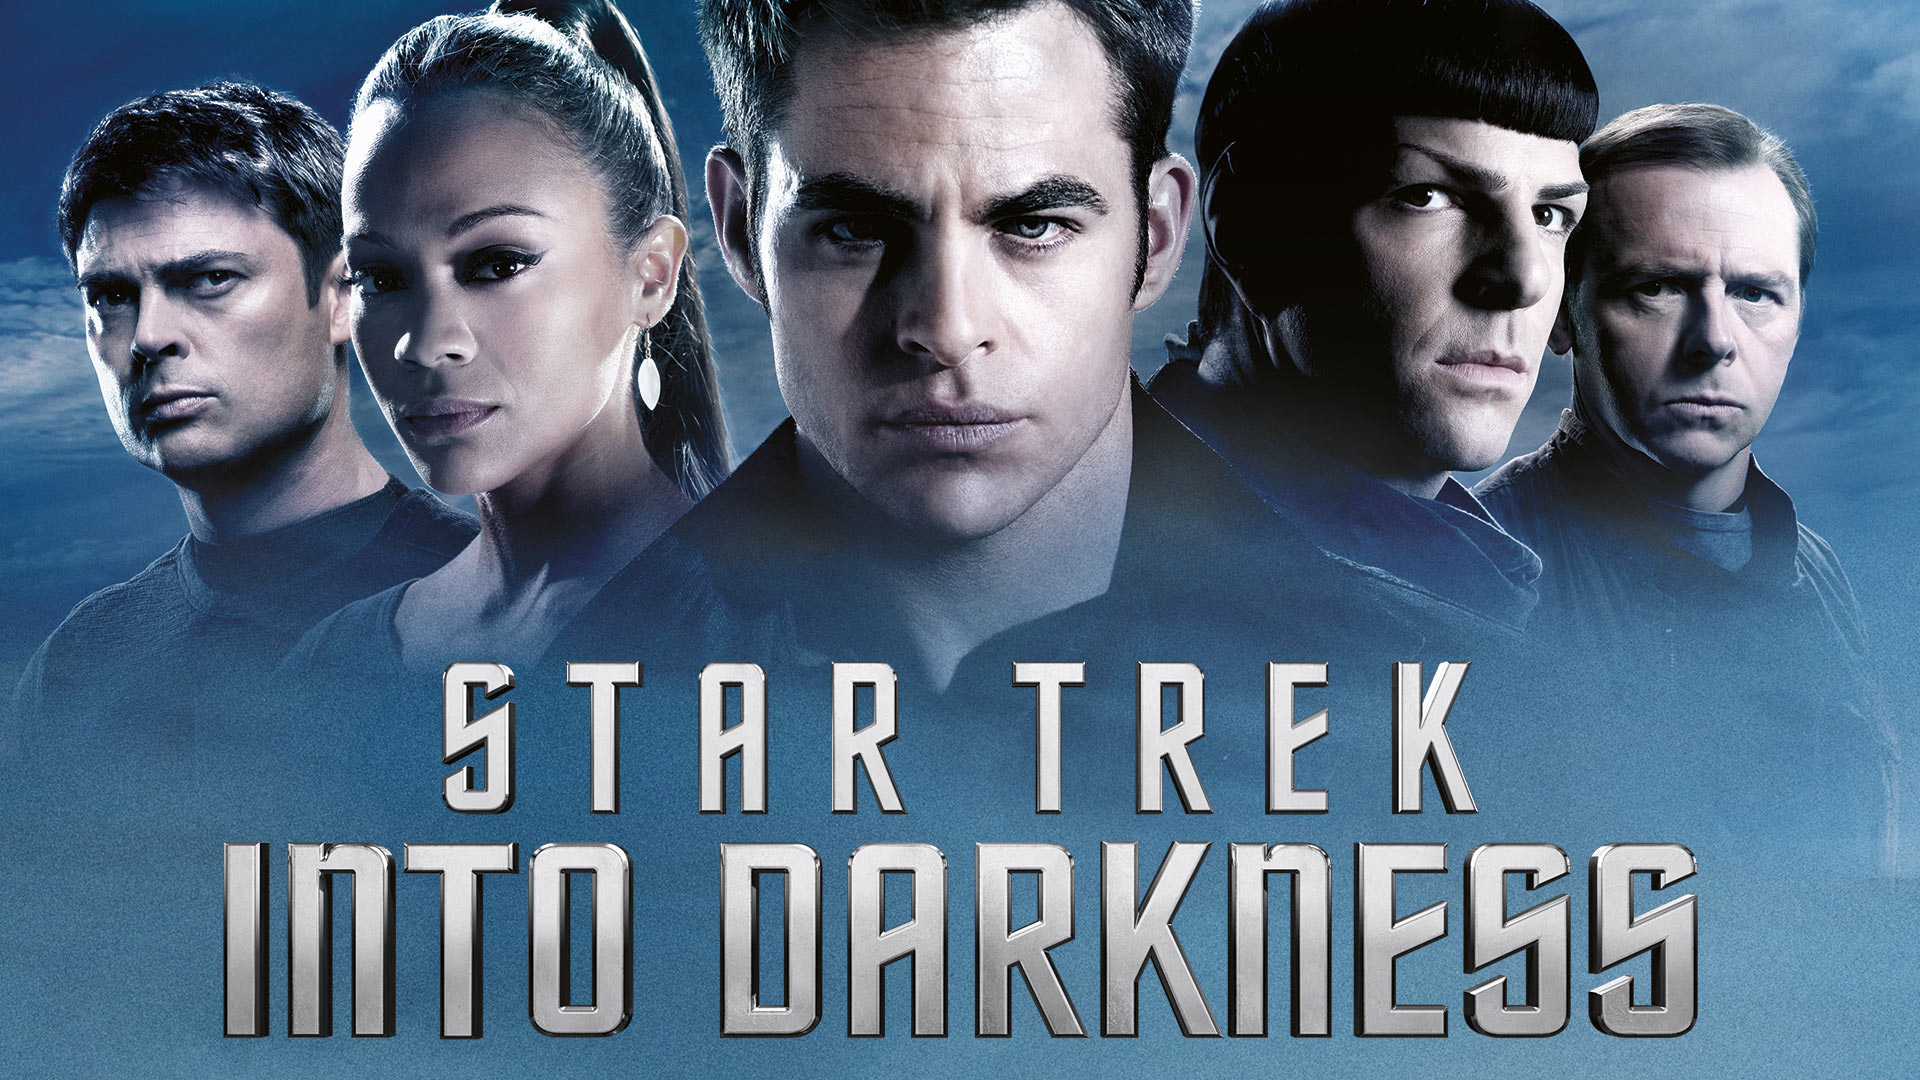 Star Trek Into Darkness, Free download, Wallpaper, HD, 1920x1080 Full HD Desktop